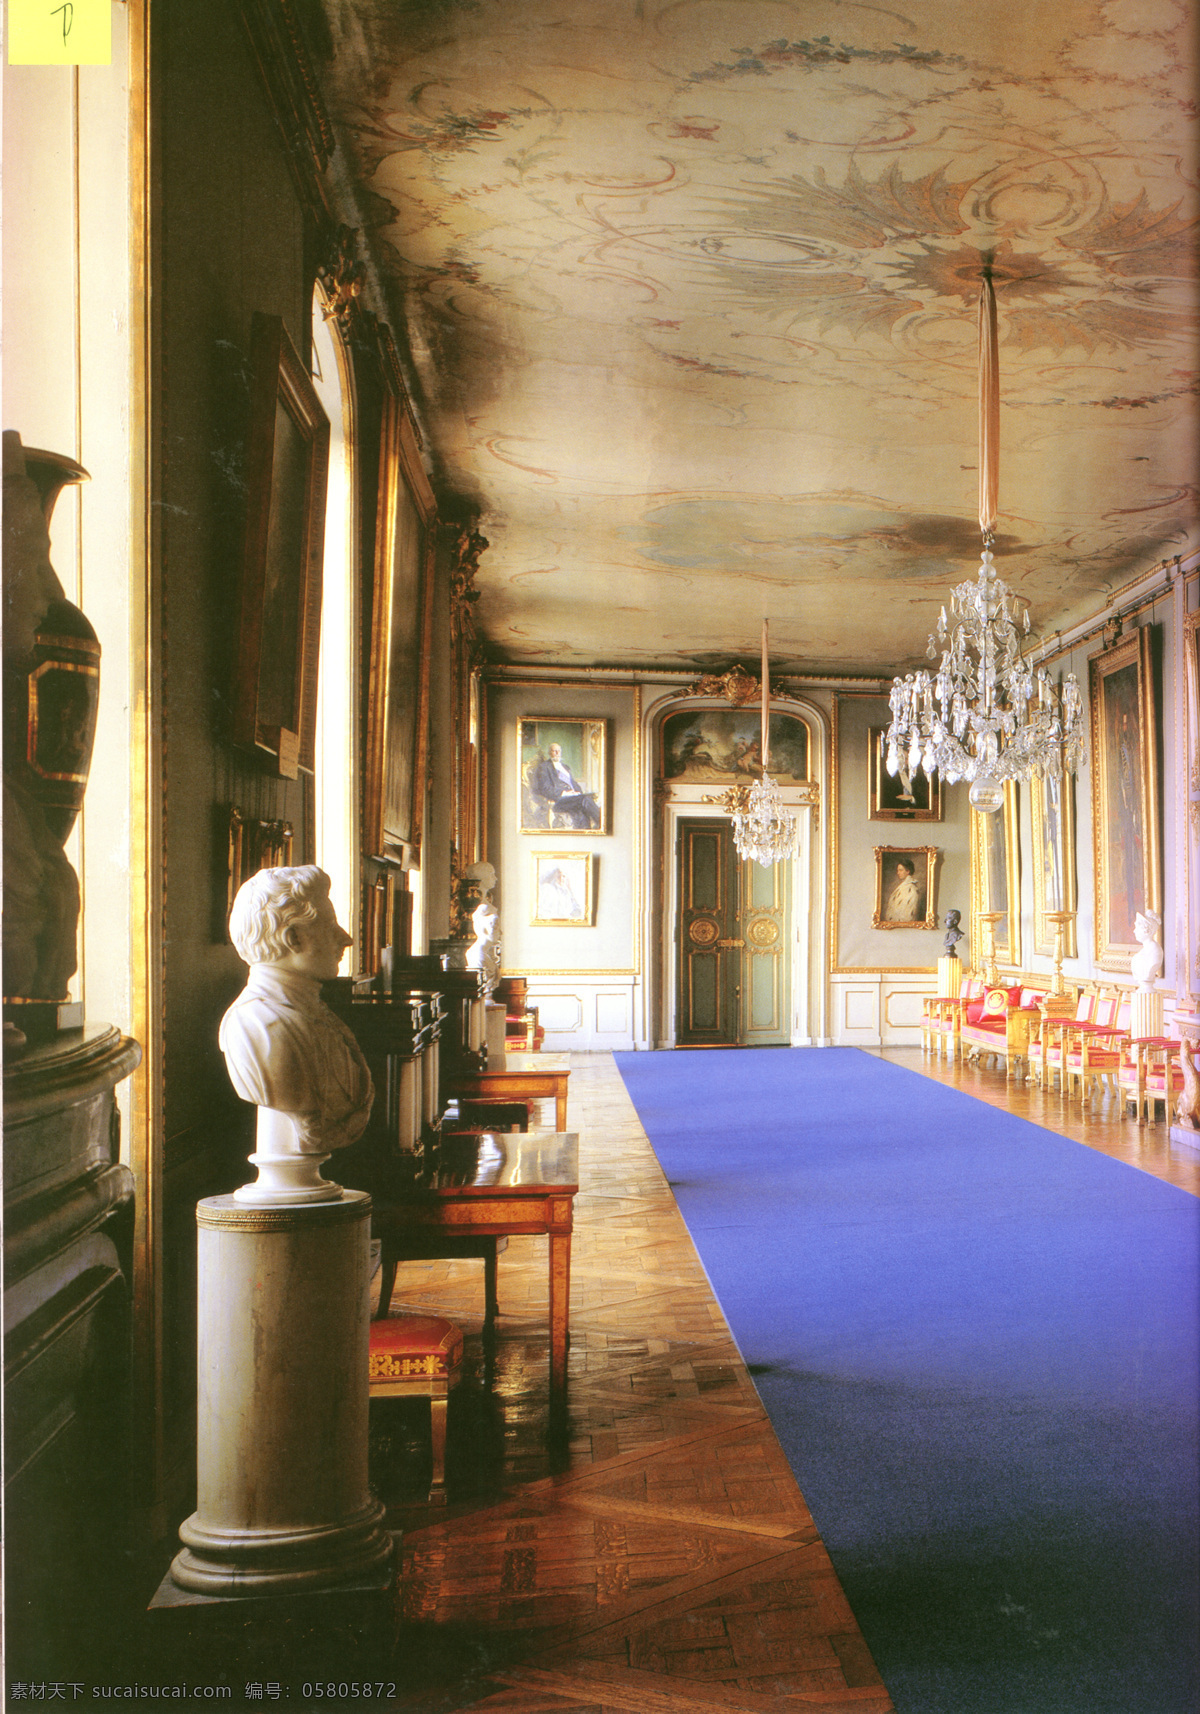 欧式 走廊 长廊 宫廷 建筑园林 欧式装饰 欧式走廊 摄影图库 室内摄影 装饰 装饰素材